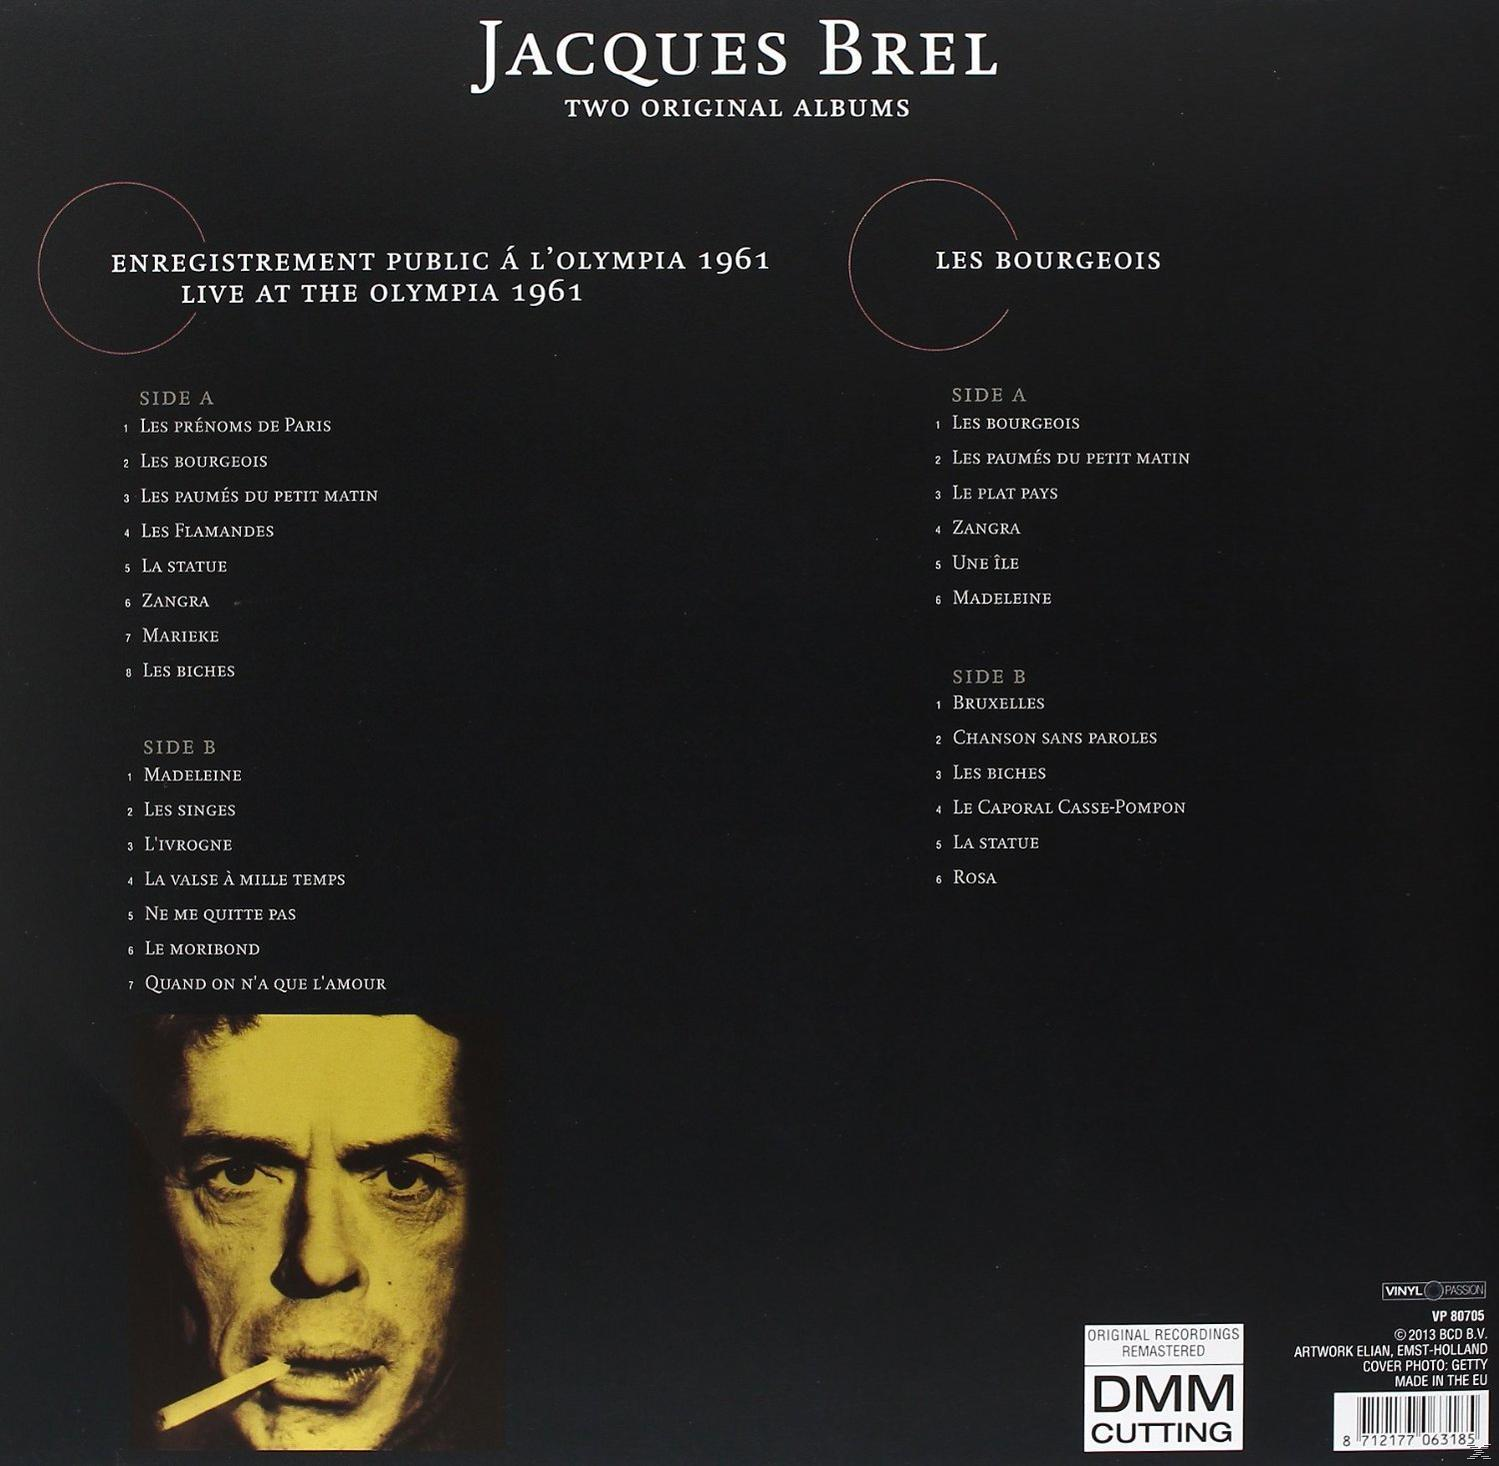 Jacques Brel - Bruxelles (Vinyl) 